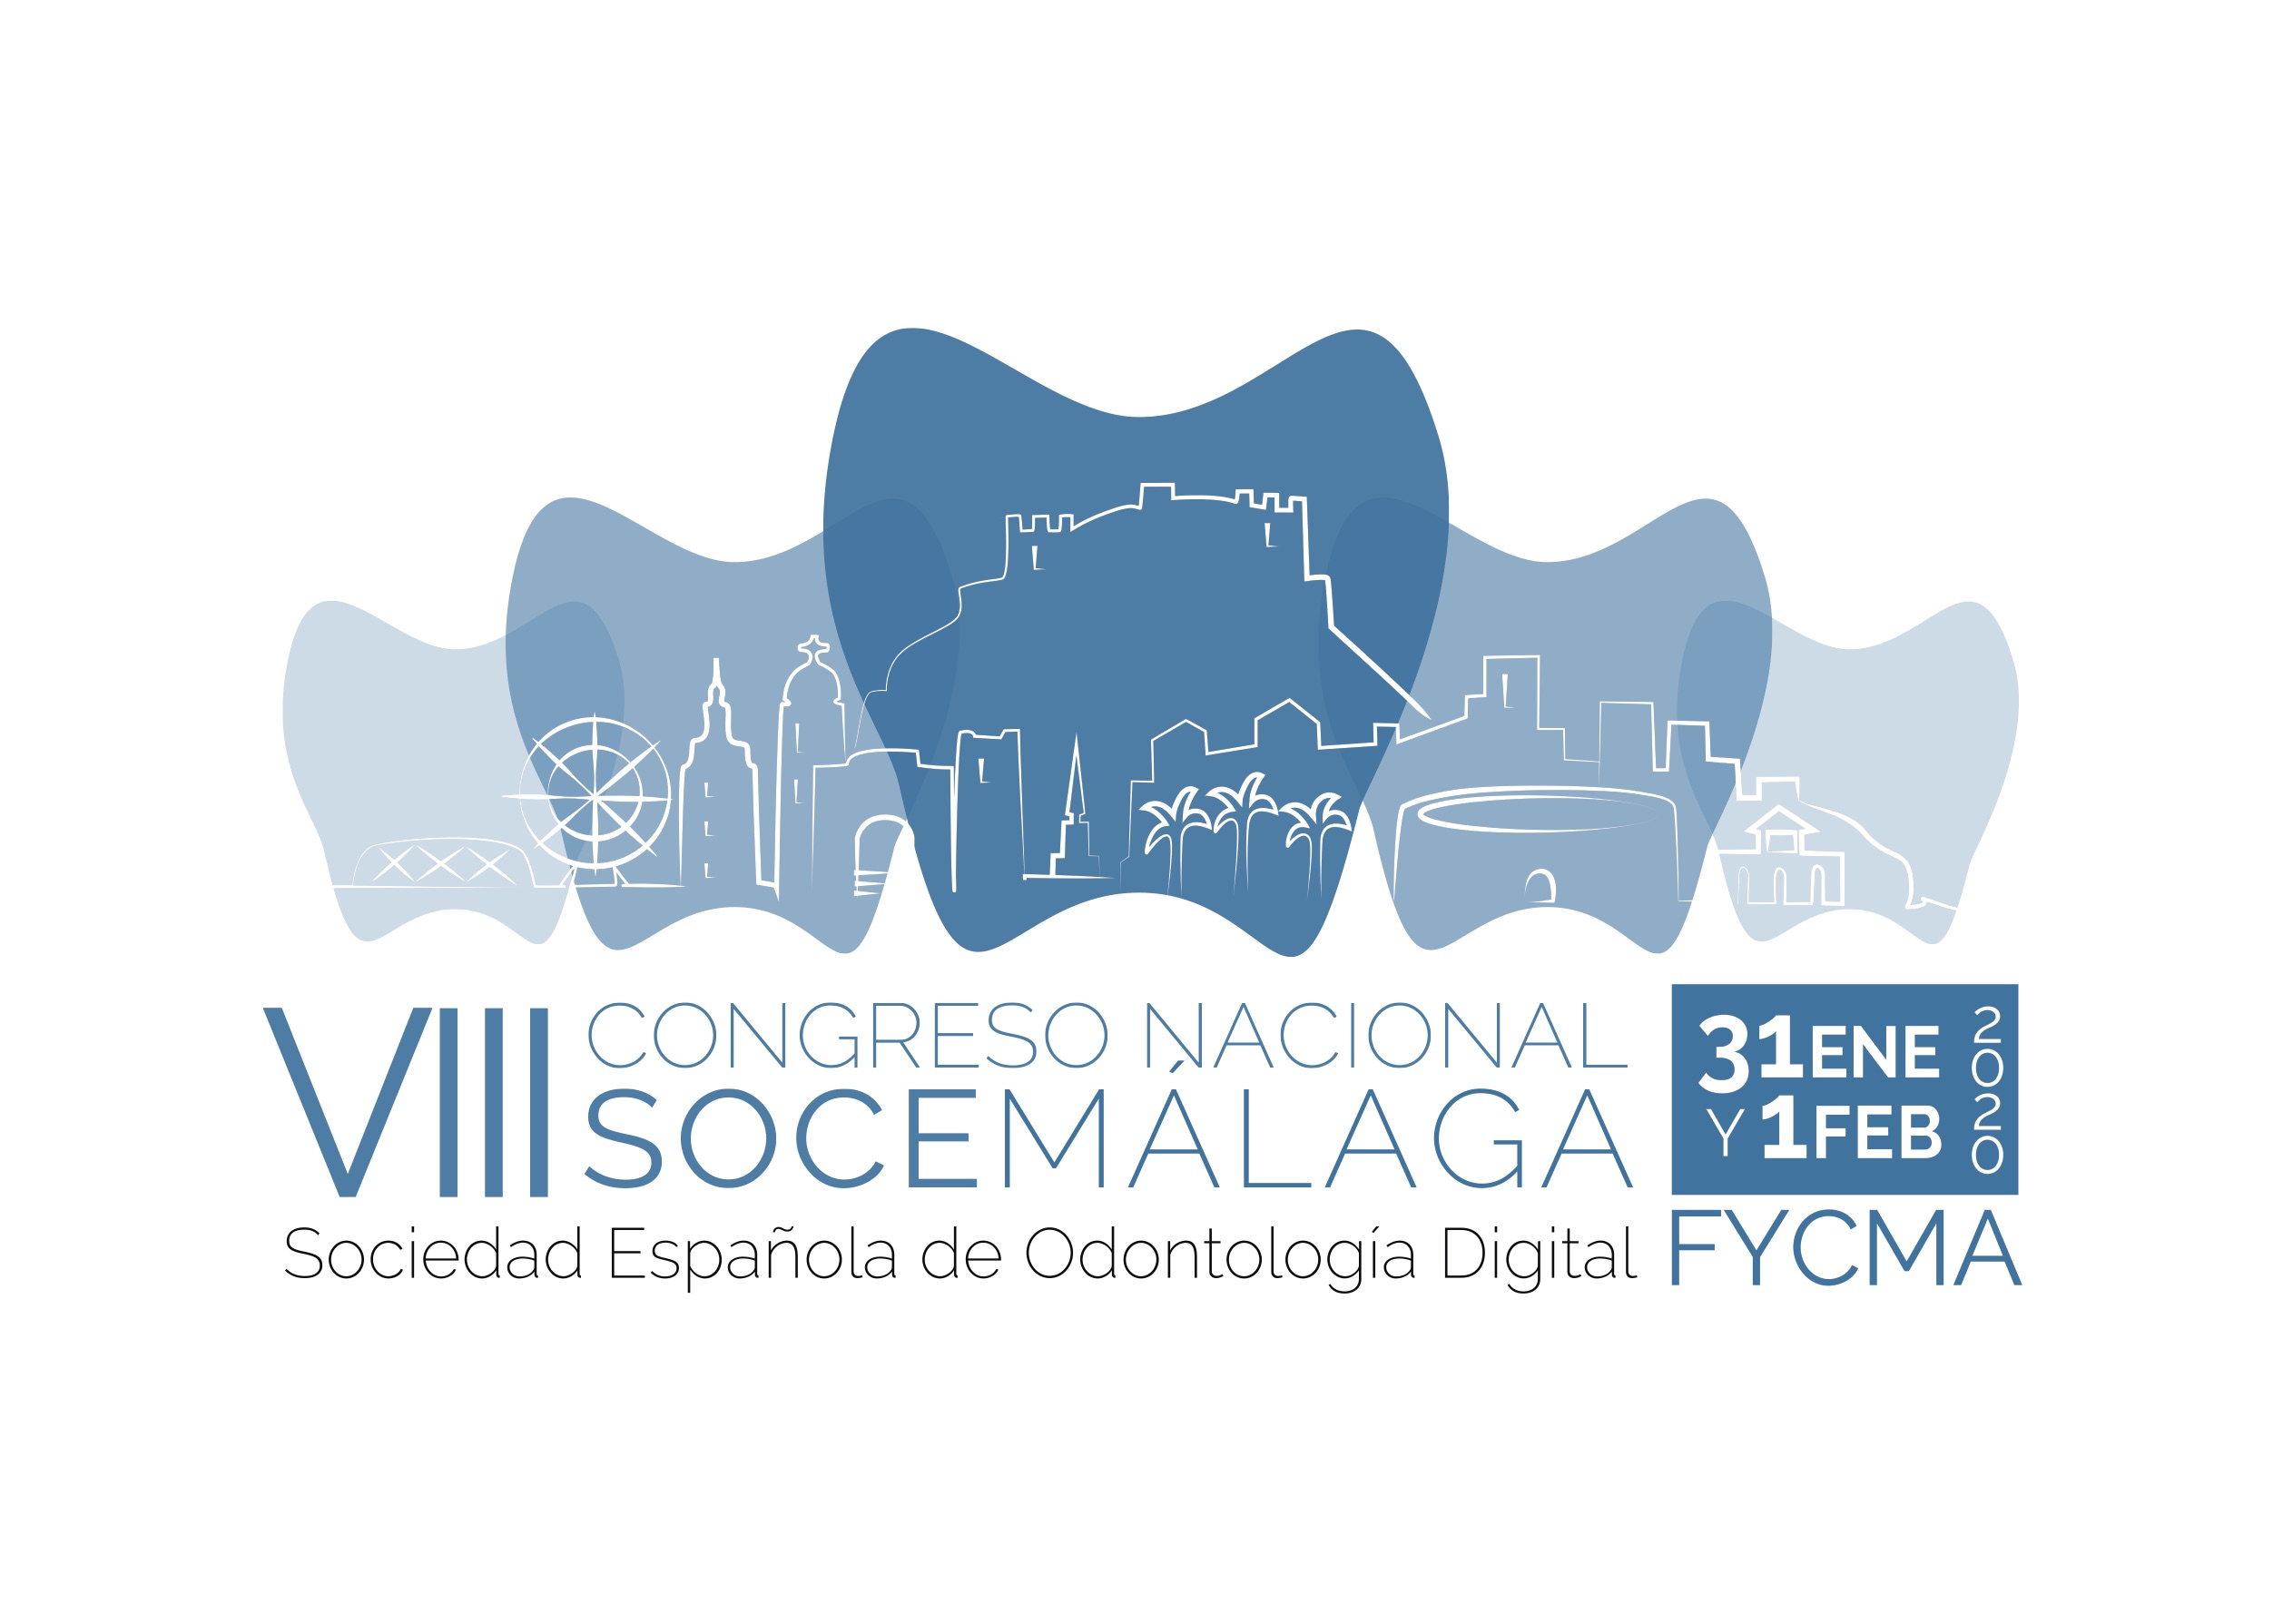 El comité científico está preparando un programa con temas de innovación digital que respalden el lema de la reunión, “Actualízate en Odontología Digital".